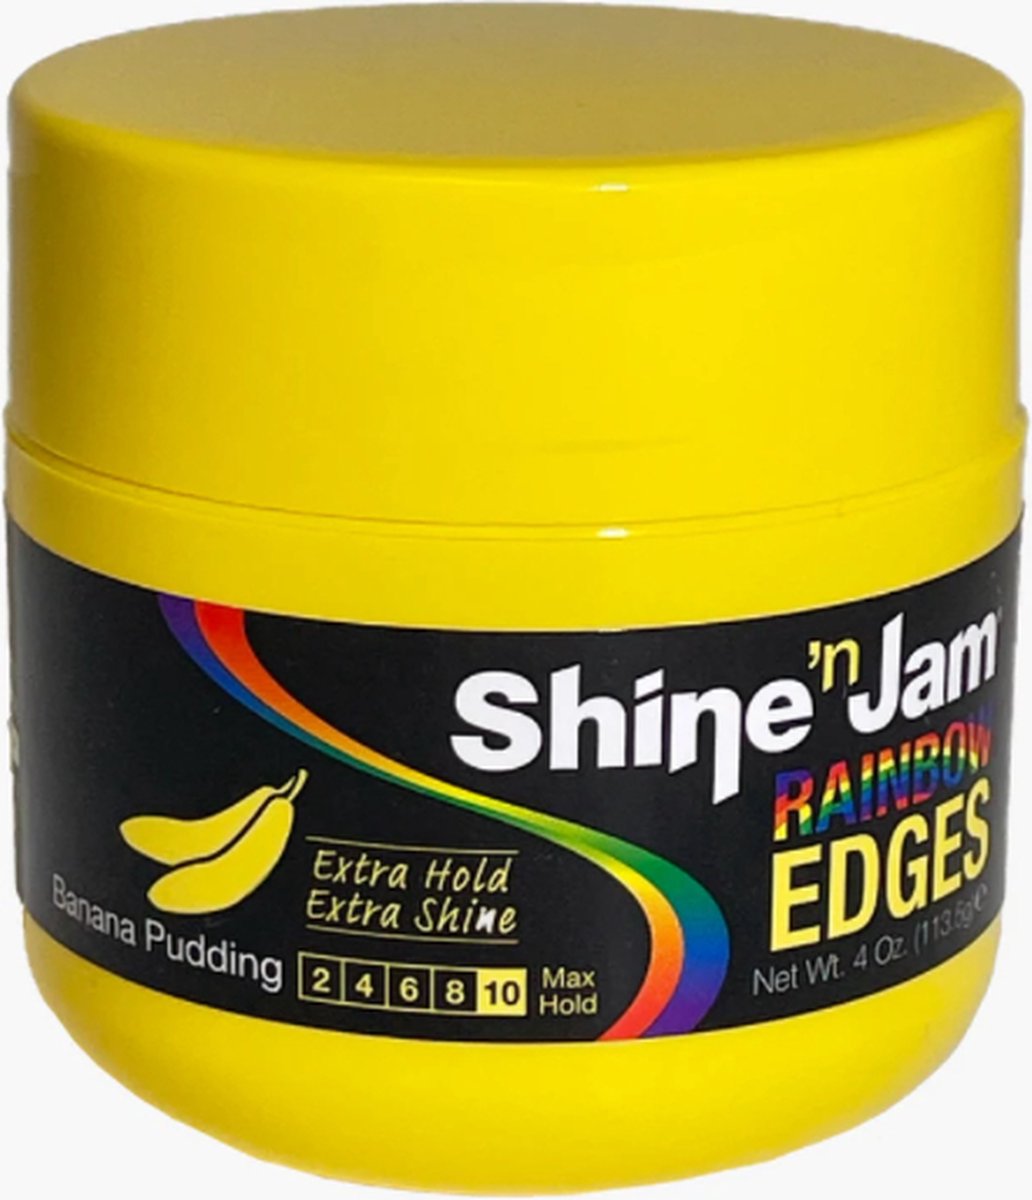 Ampro Shine 'n Jam Rainbow Edges Banana Pudding 4oz